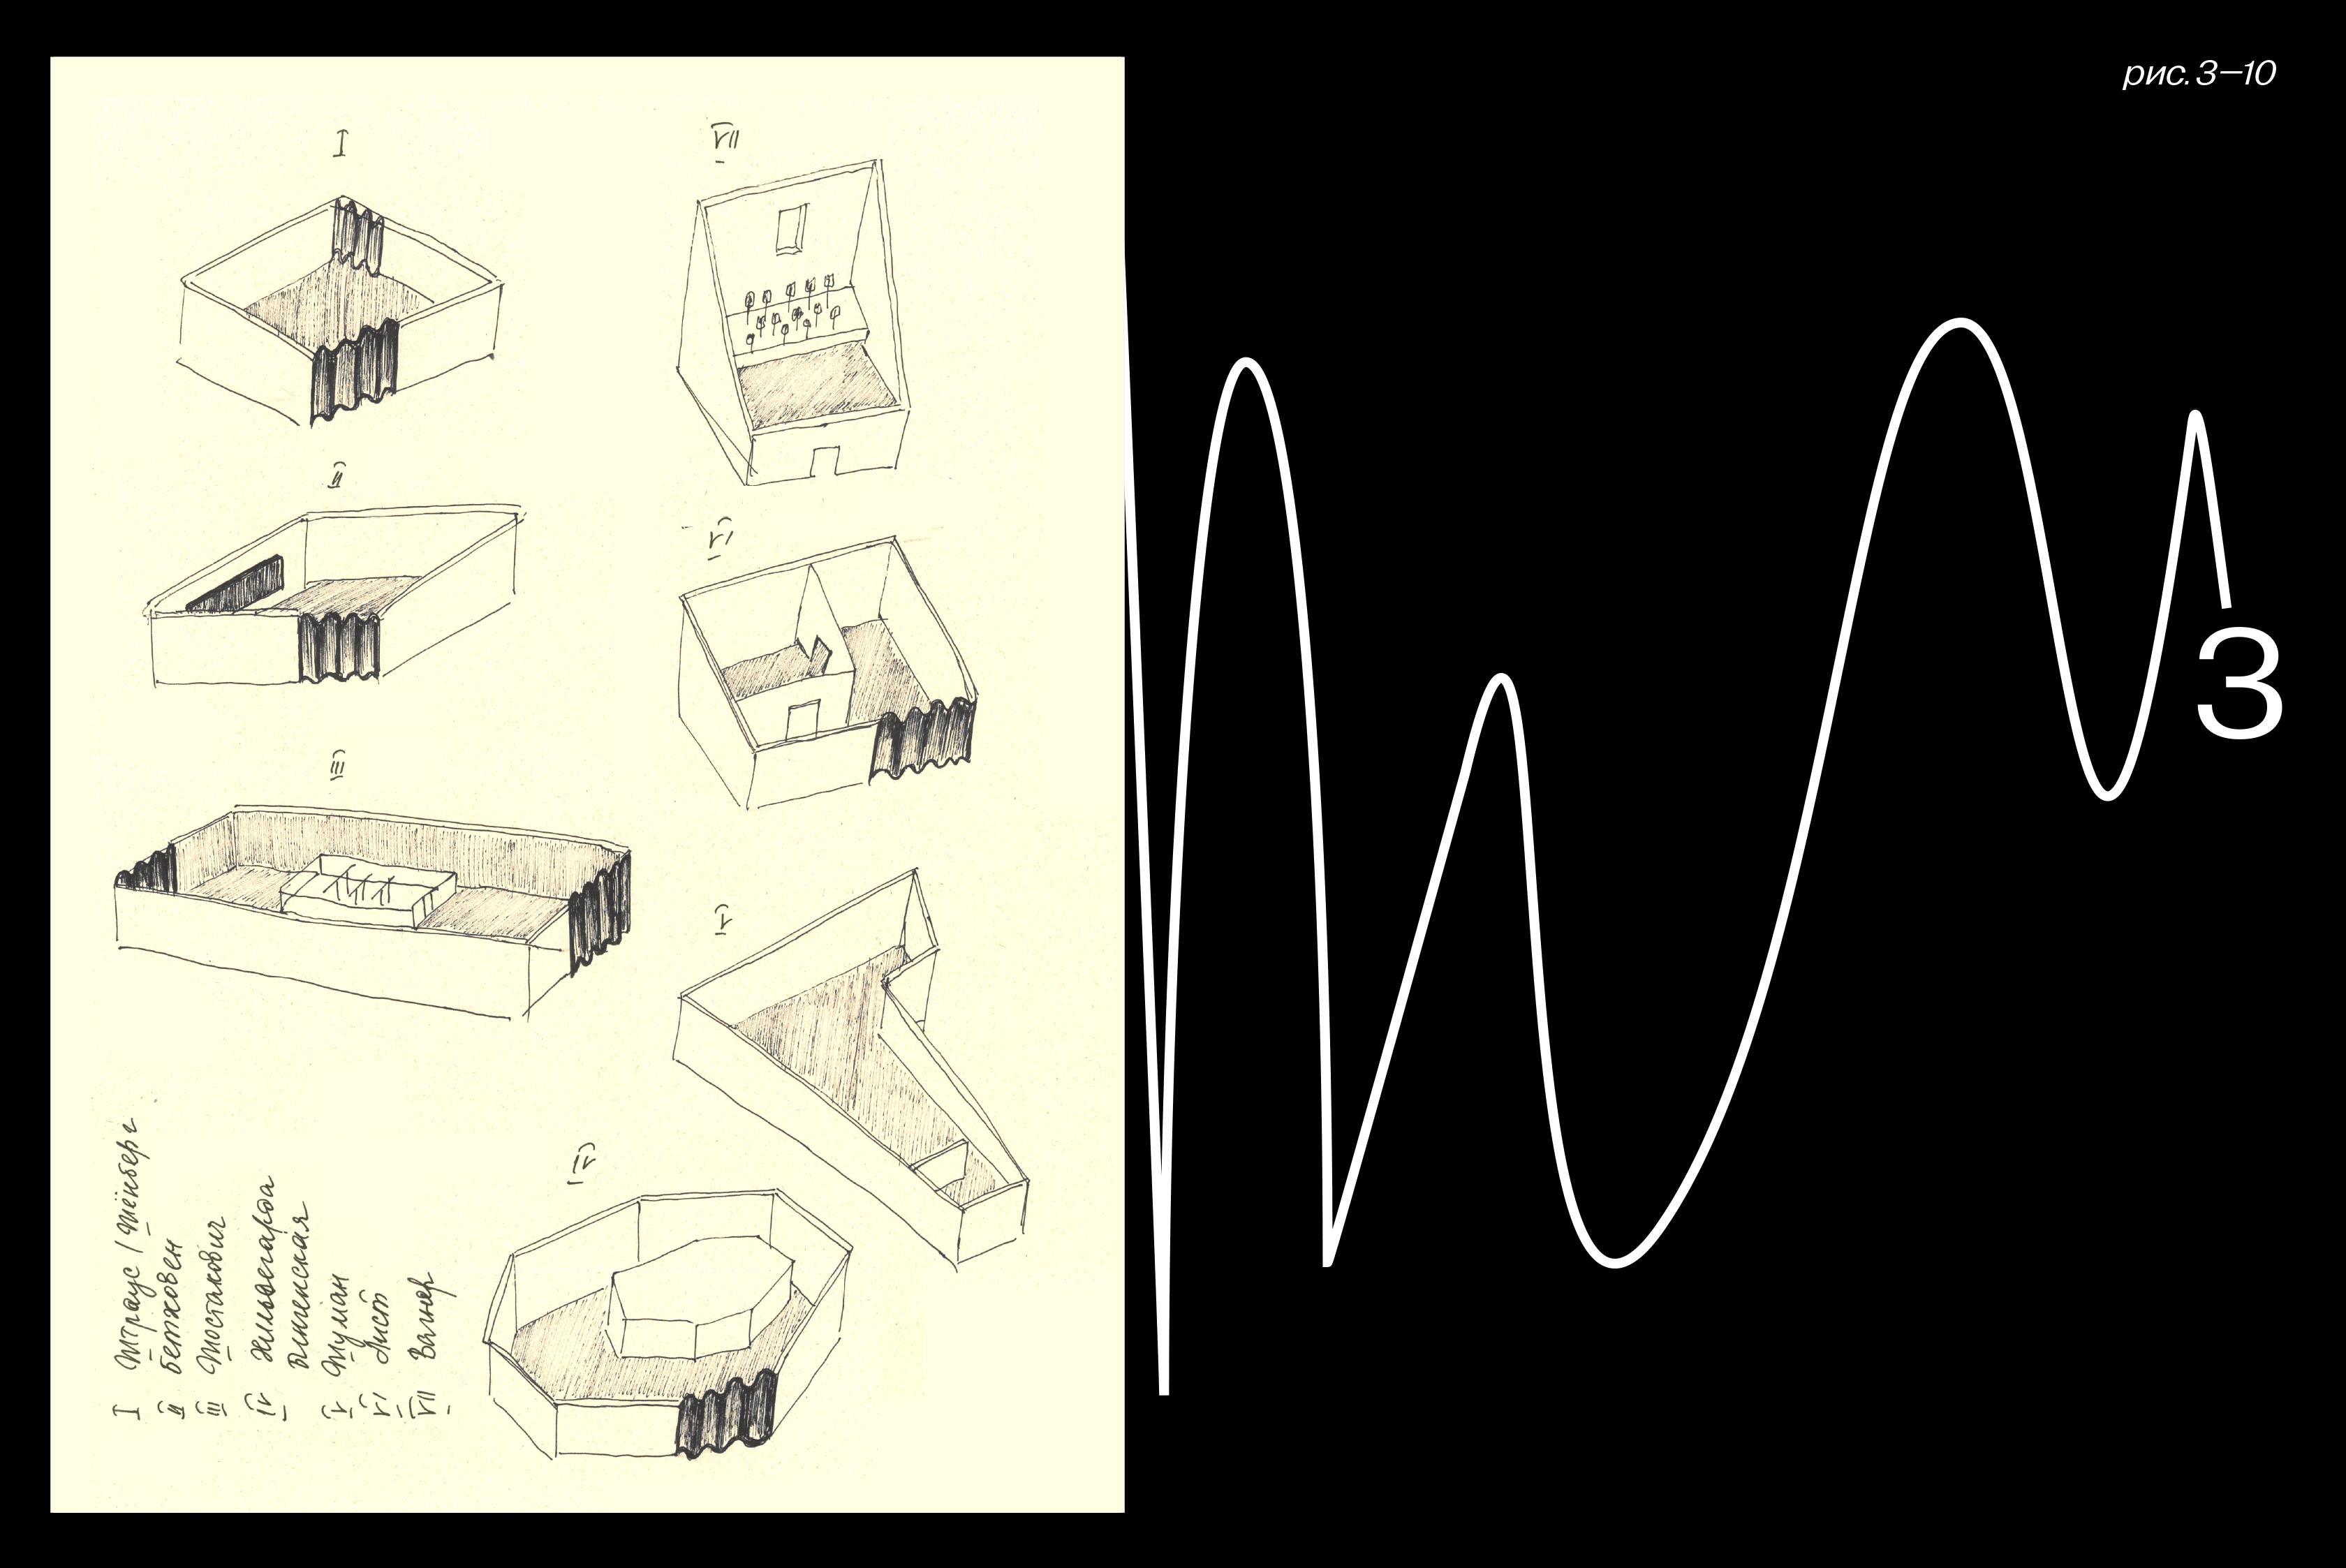 Динамическое изображение звуковой волны